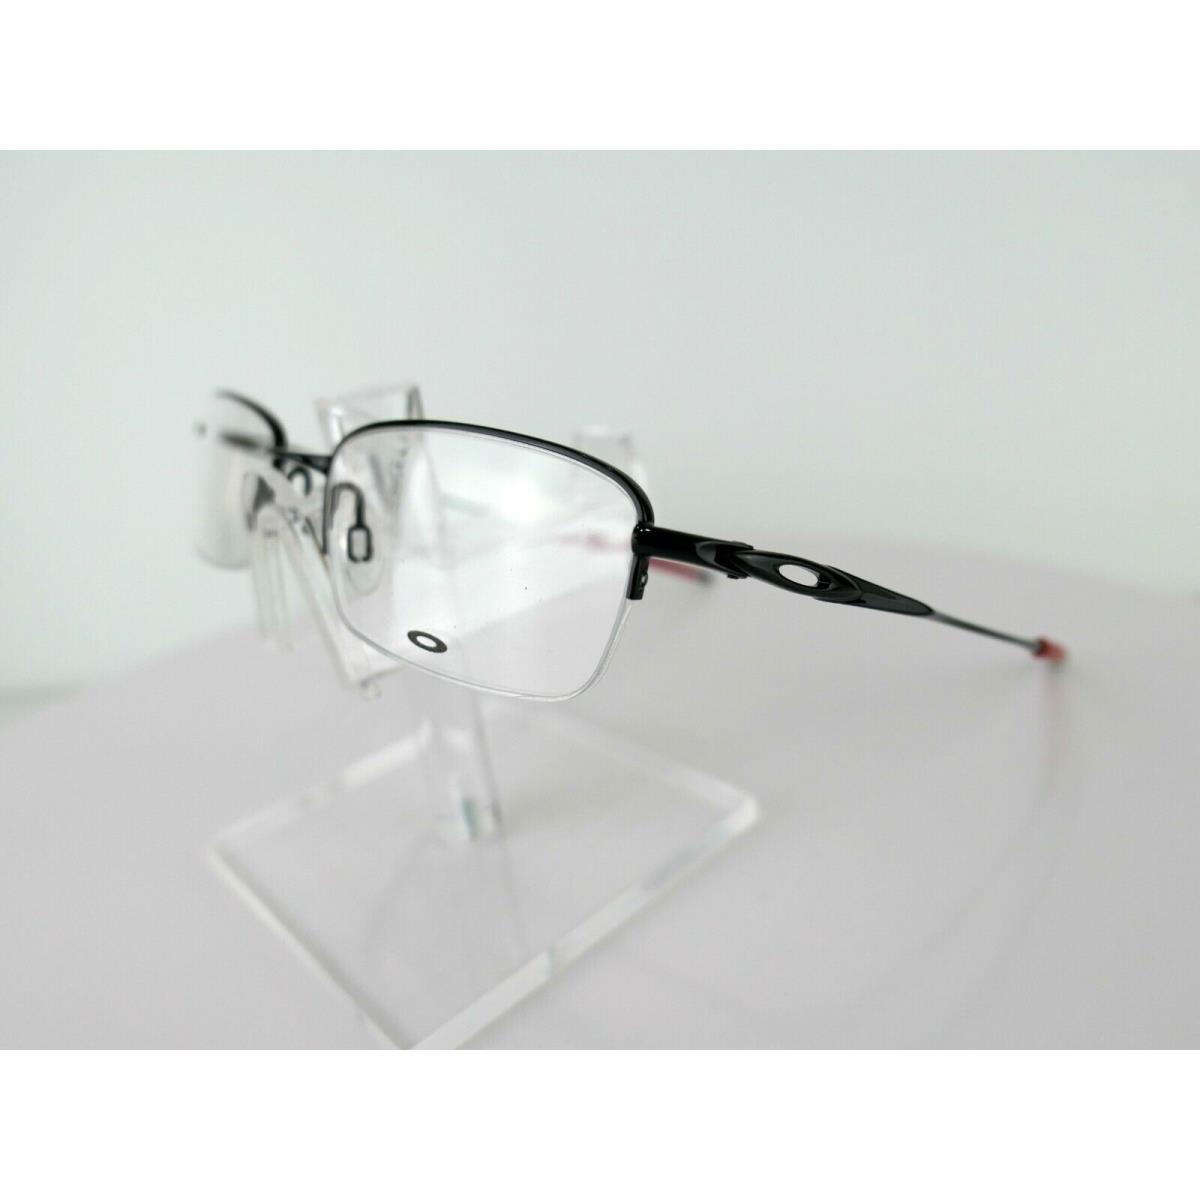 Oakley eyeglasses  - Black , Polished Black / Red Frame 0